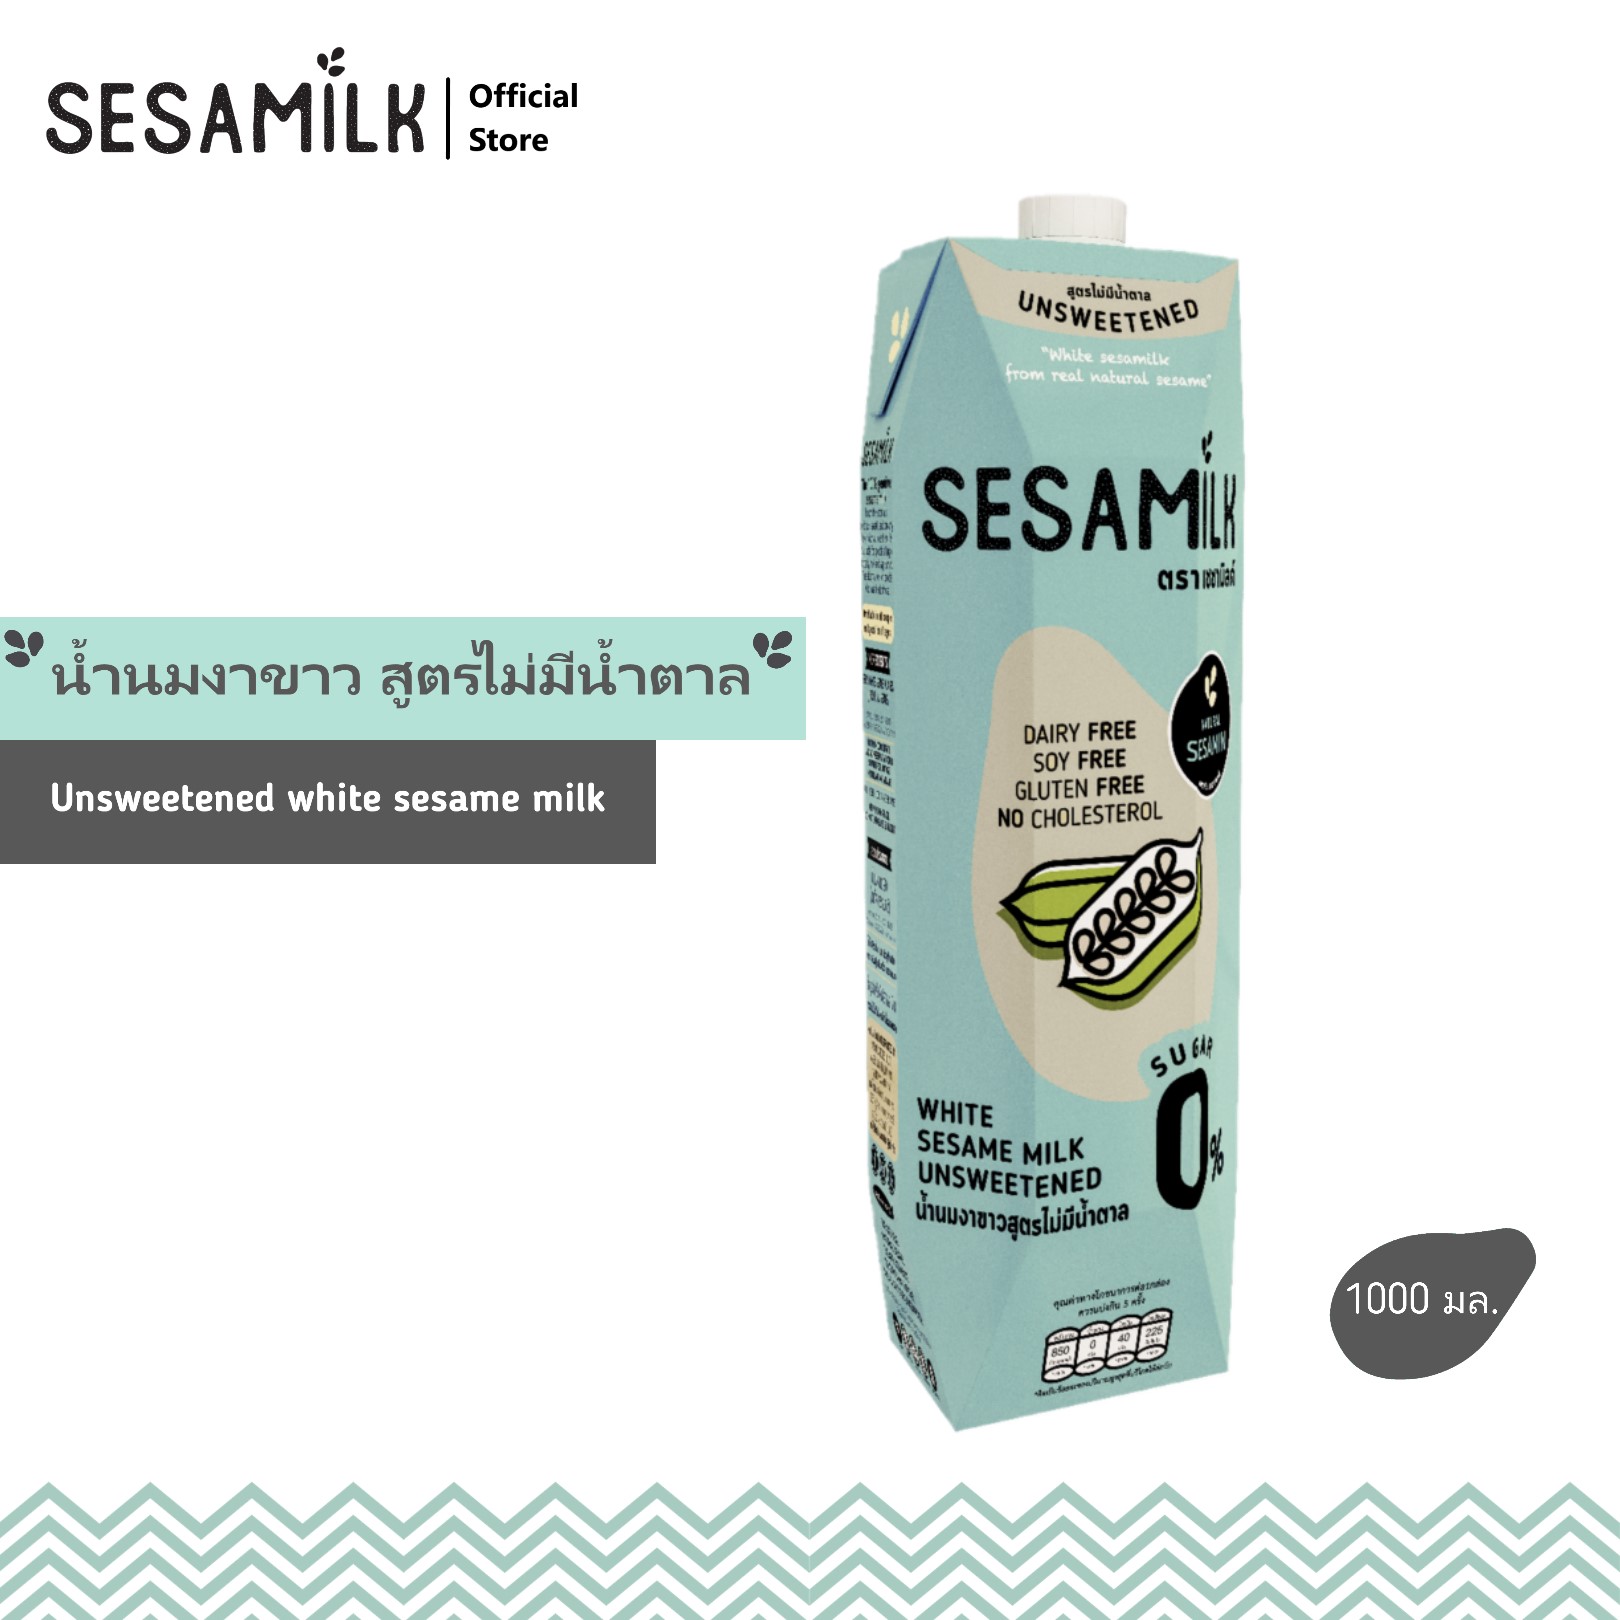 เซซามิลค์ น้ำนมงาขาว สูตรไม่มีน้ำตาล ขนาด 1000 ml Sesamilk Unsweetened white sesame milk 1000 ml